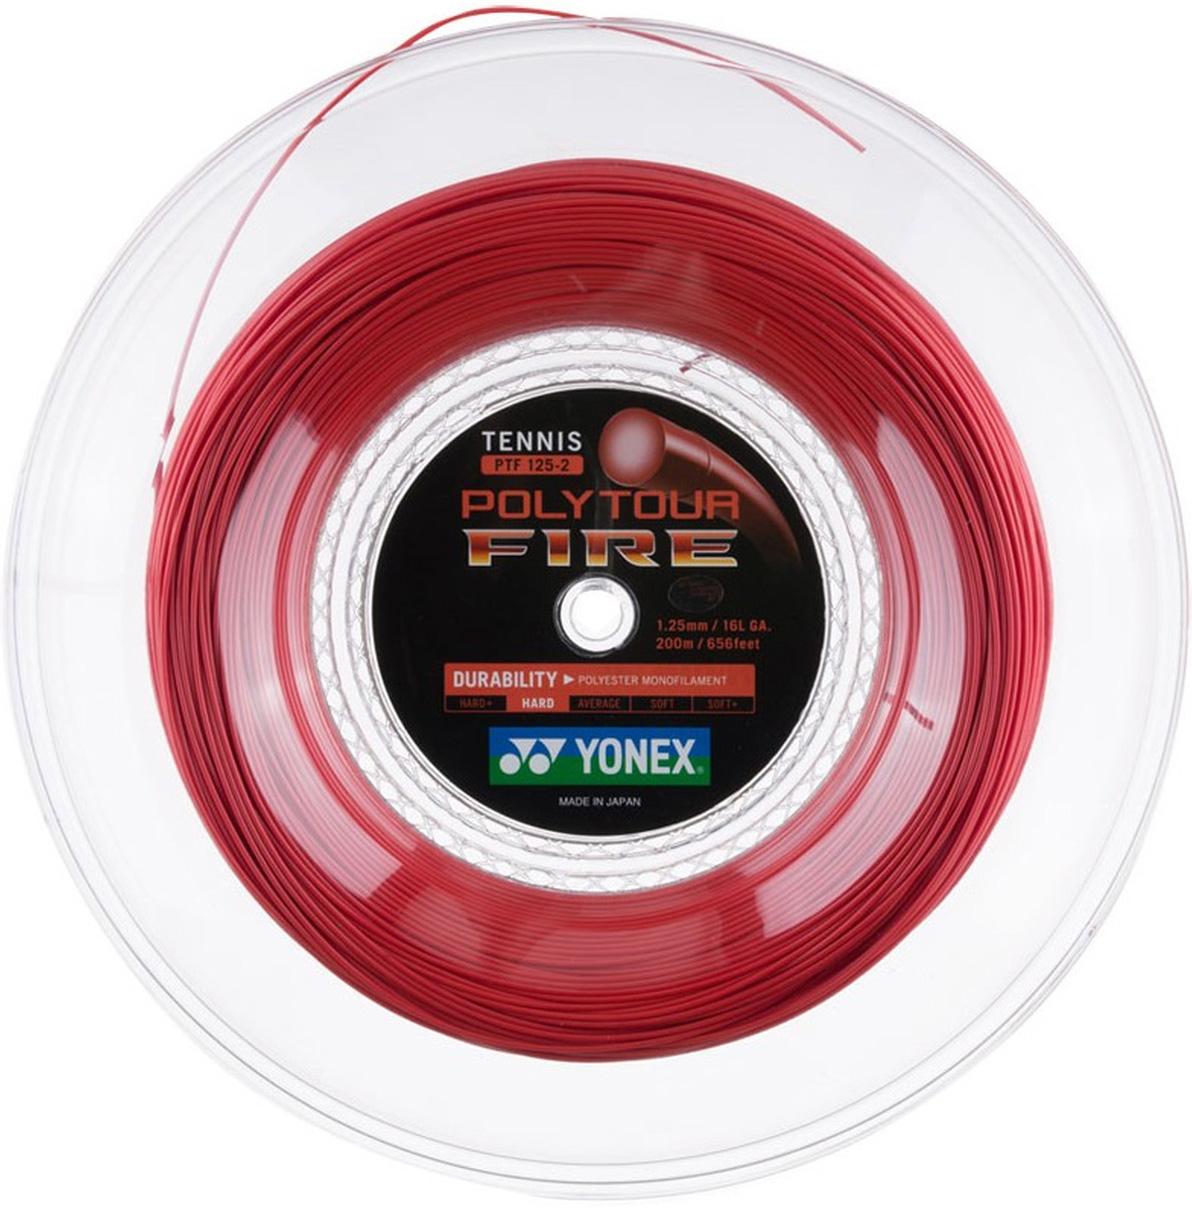 Yonex PolyTour Fire 16L 1.25mm/200M Tennis String